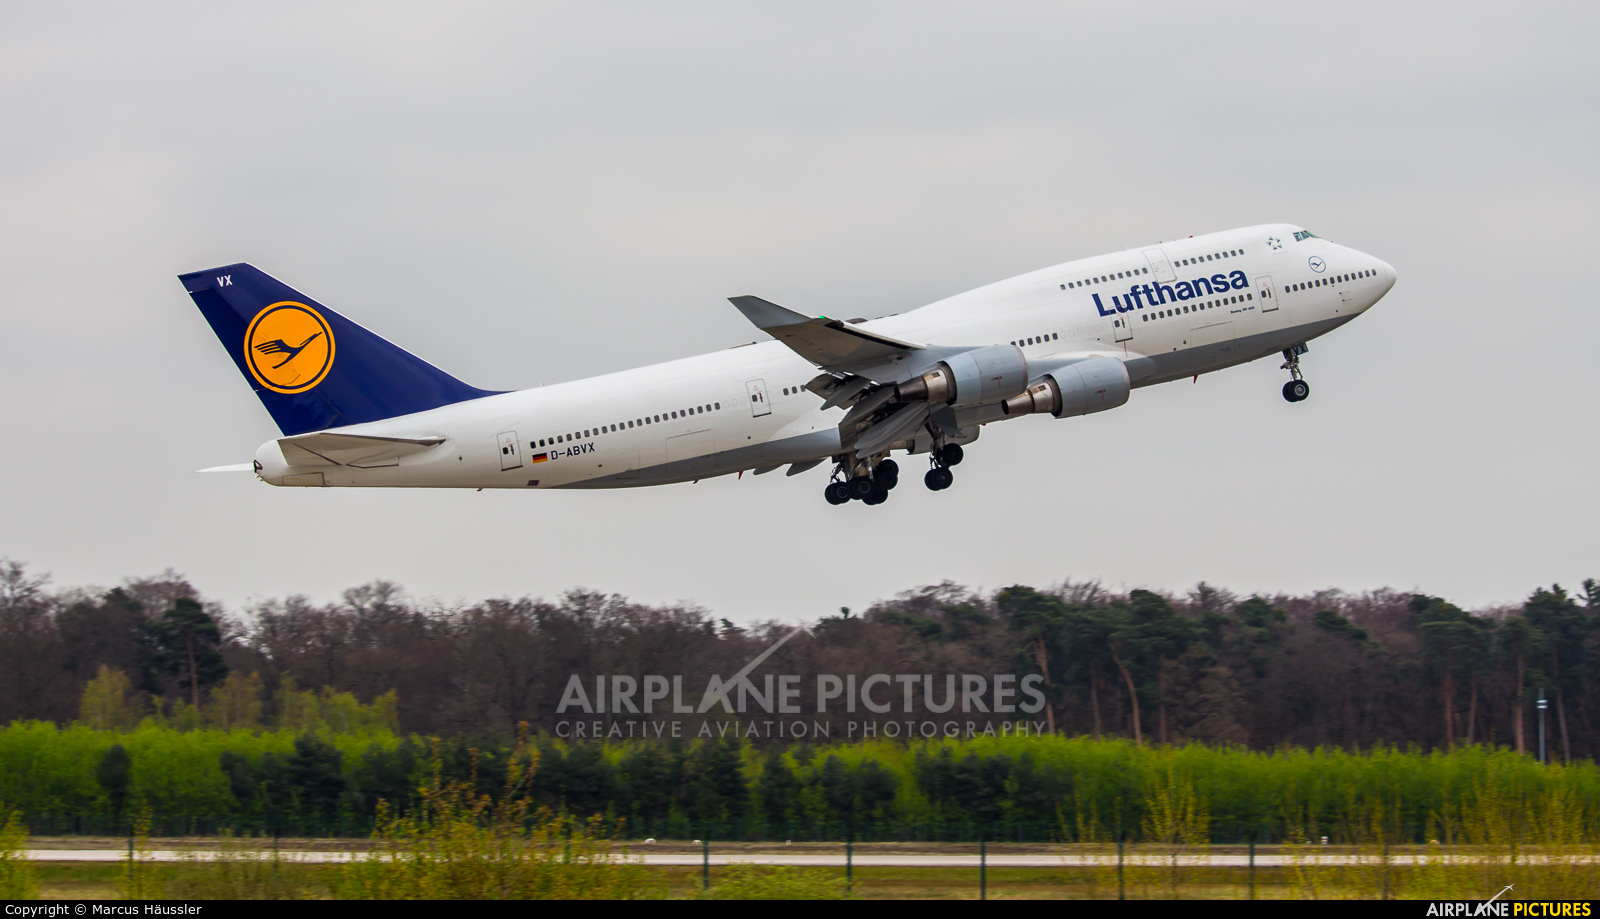 Lufthansa D-ABVX aircraft at Frankfurt